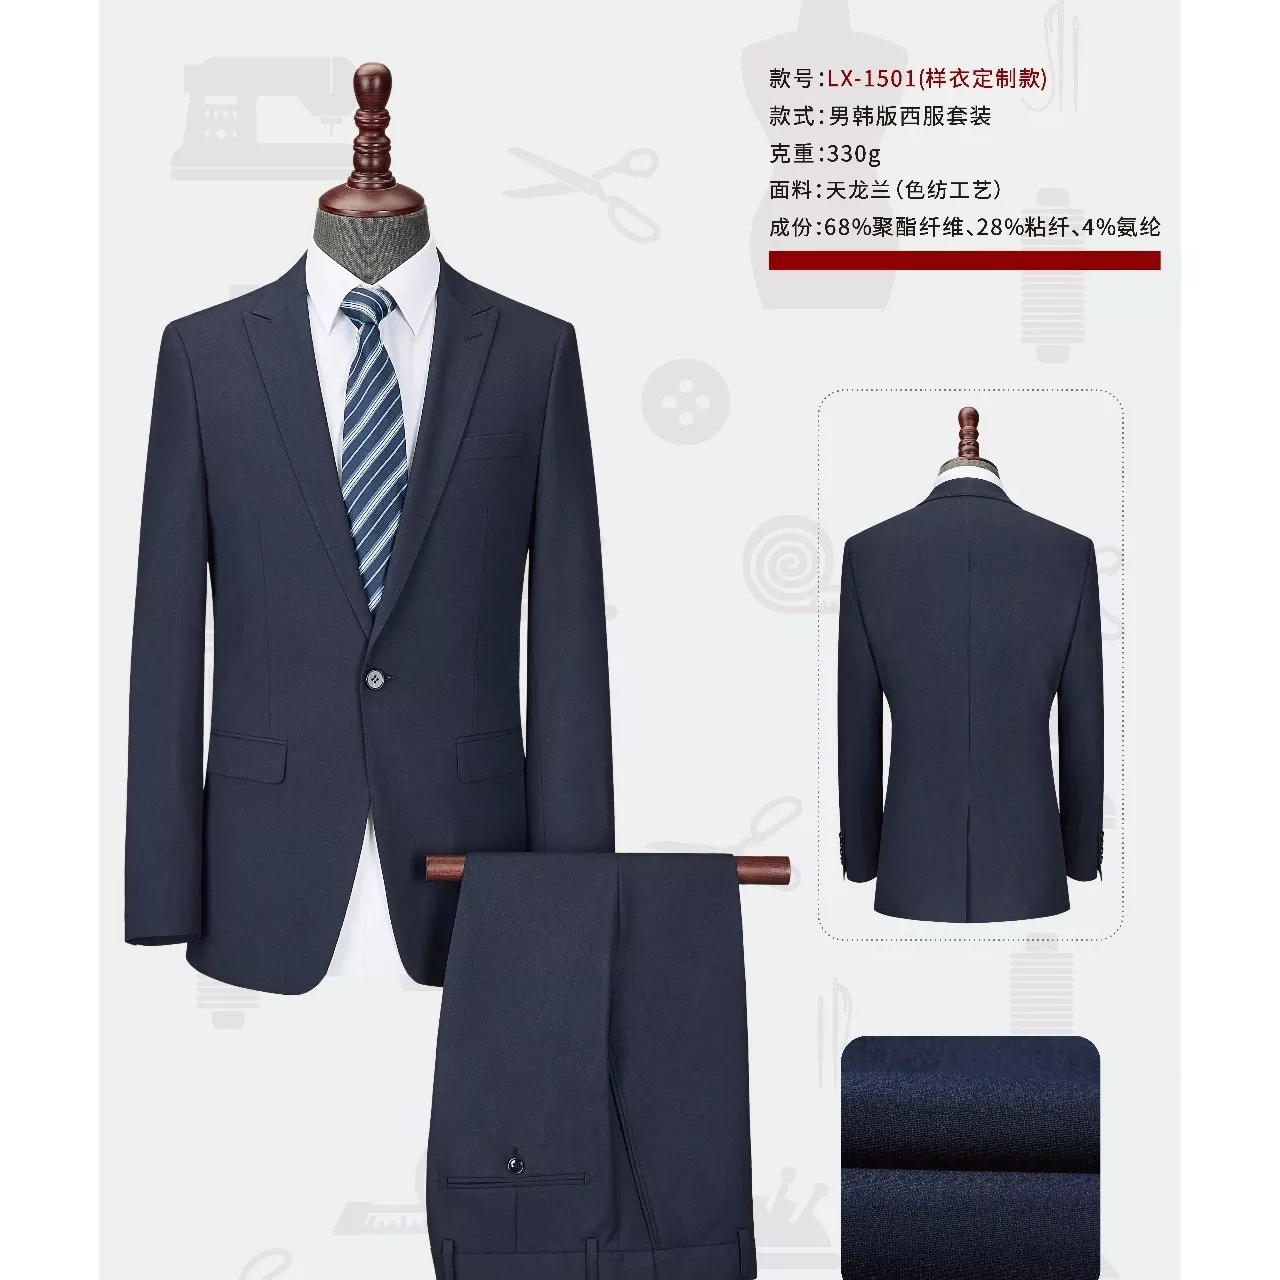 西安职业西装动做 时尚设计 款式新颖 男式西服套装4